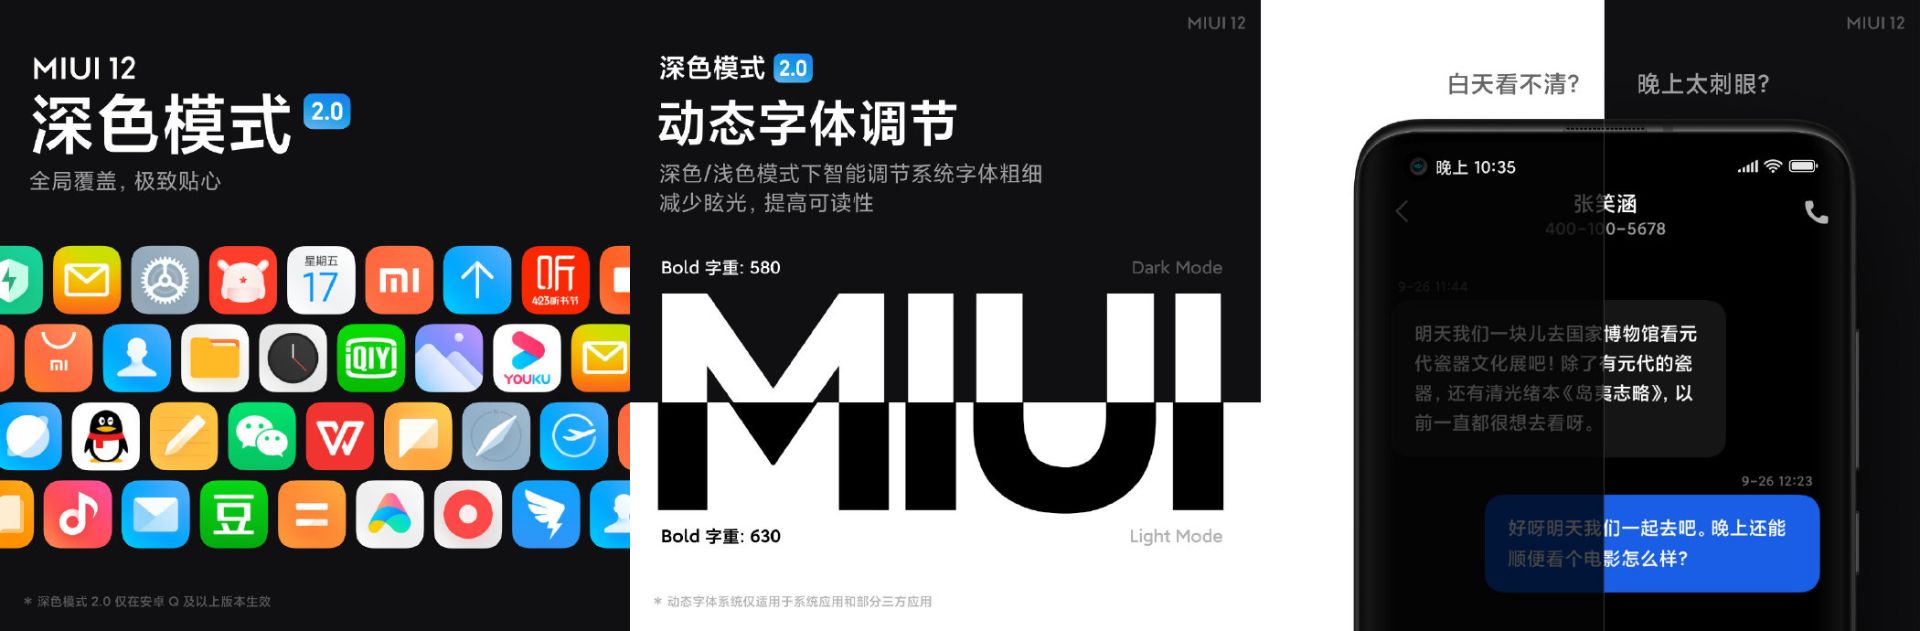 می یو آی 12 شیائومی / Xiaomi MIUI 12